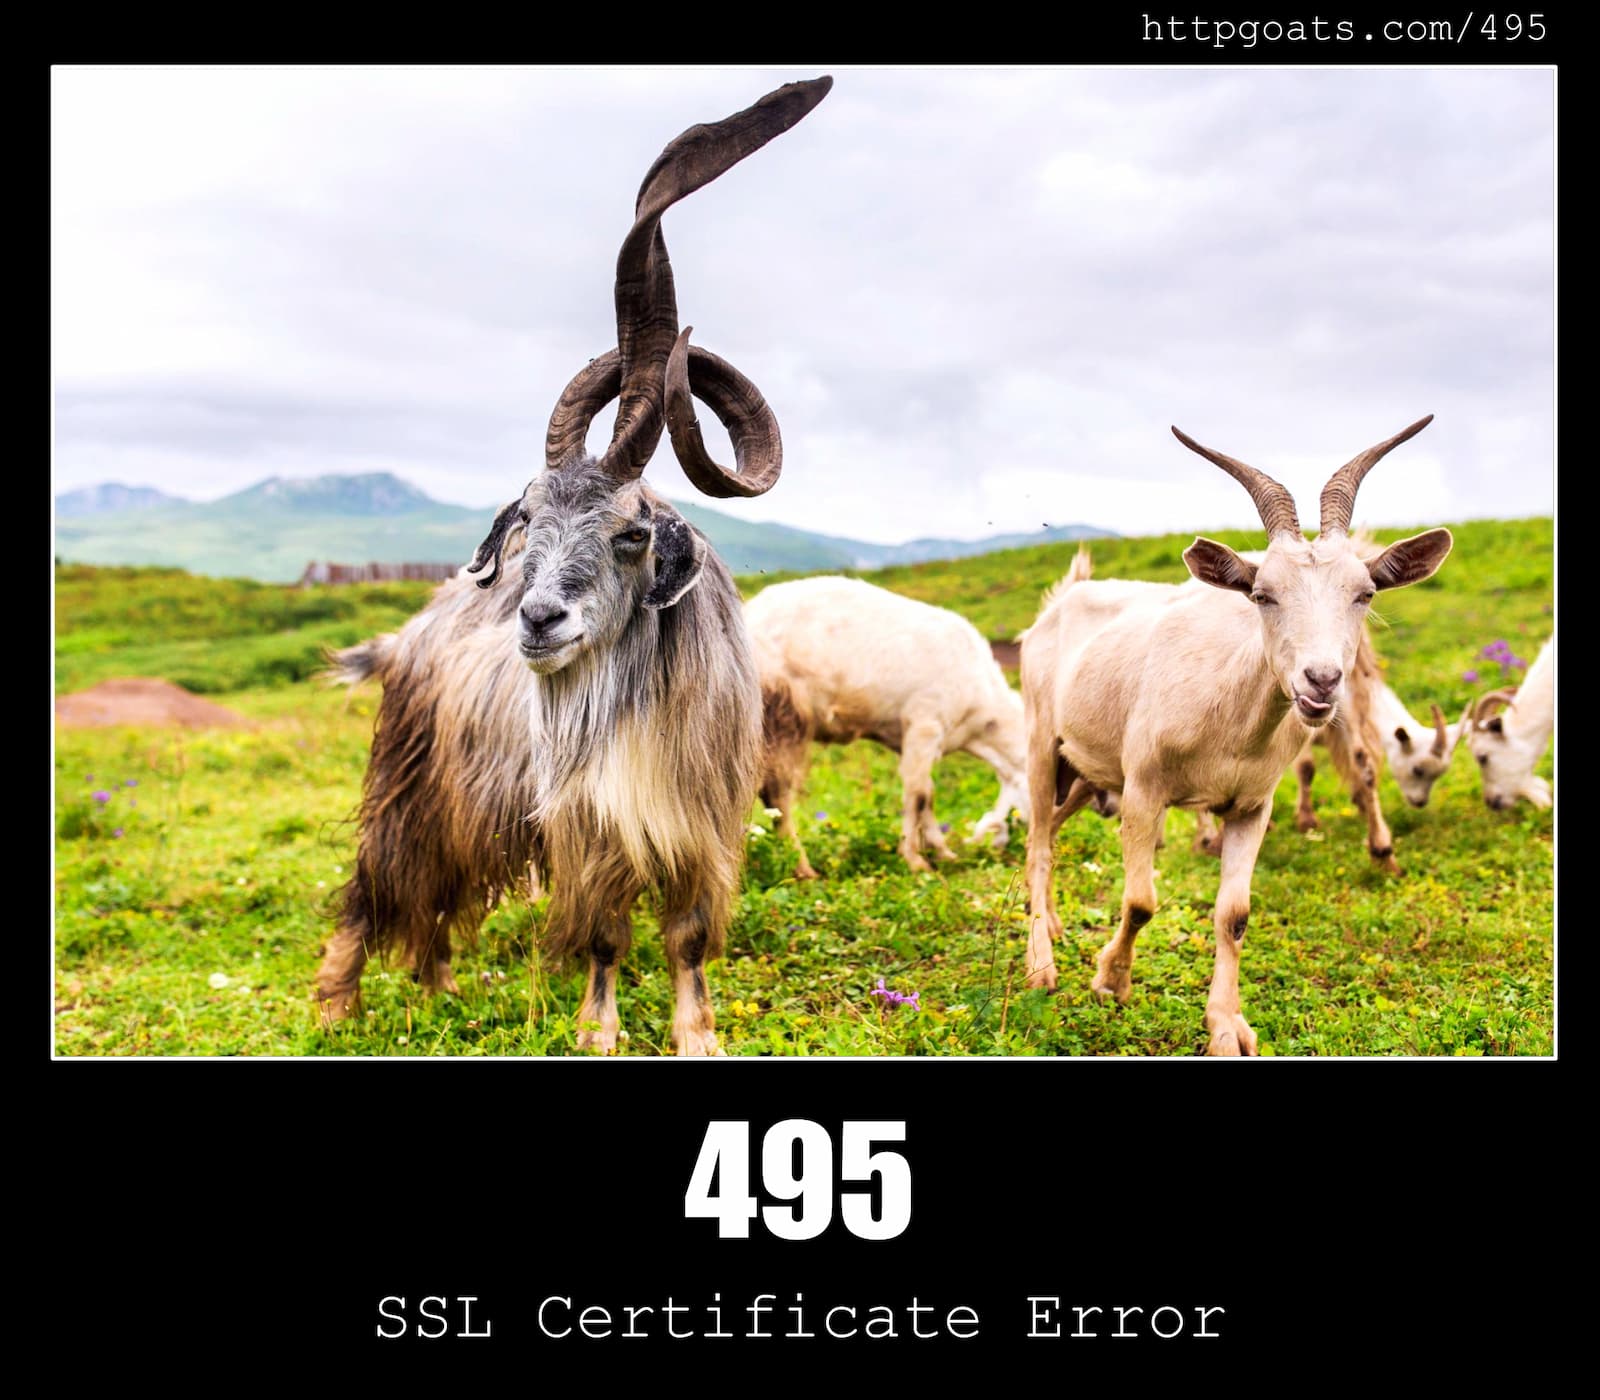 HTTP Status Code 495 SSL Certificate Error & Goats